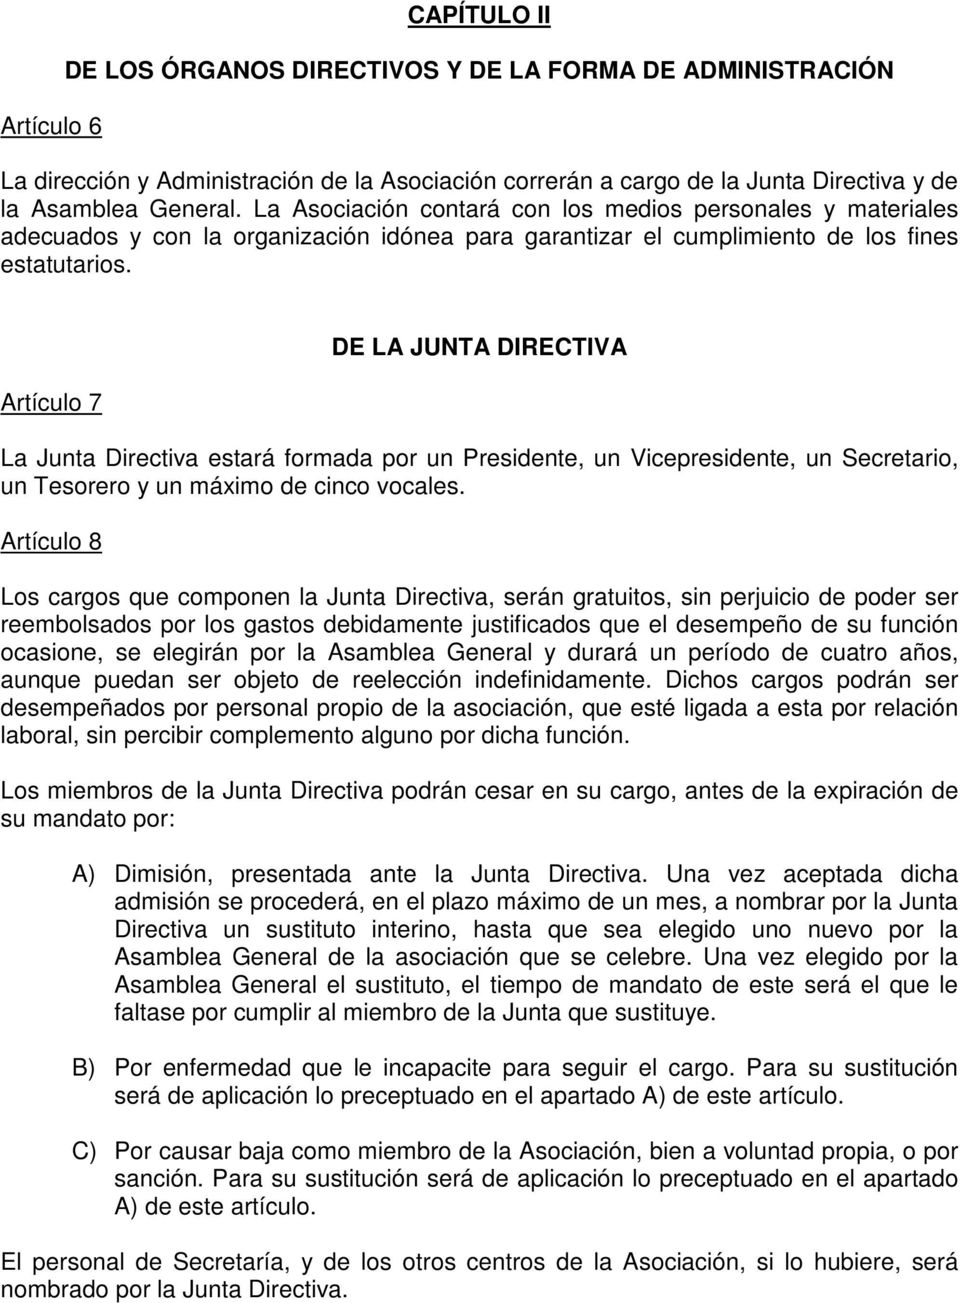 Artículo 7 DE LA JUNTA DIRECTIVA La Junta Directiva estará formada por un Presidente, un Vicepresidente, un Secretario, un Tesorero y un máximo de cinco vocales.